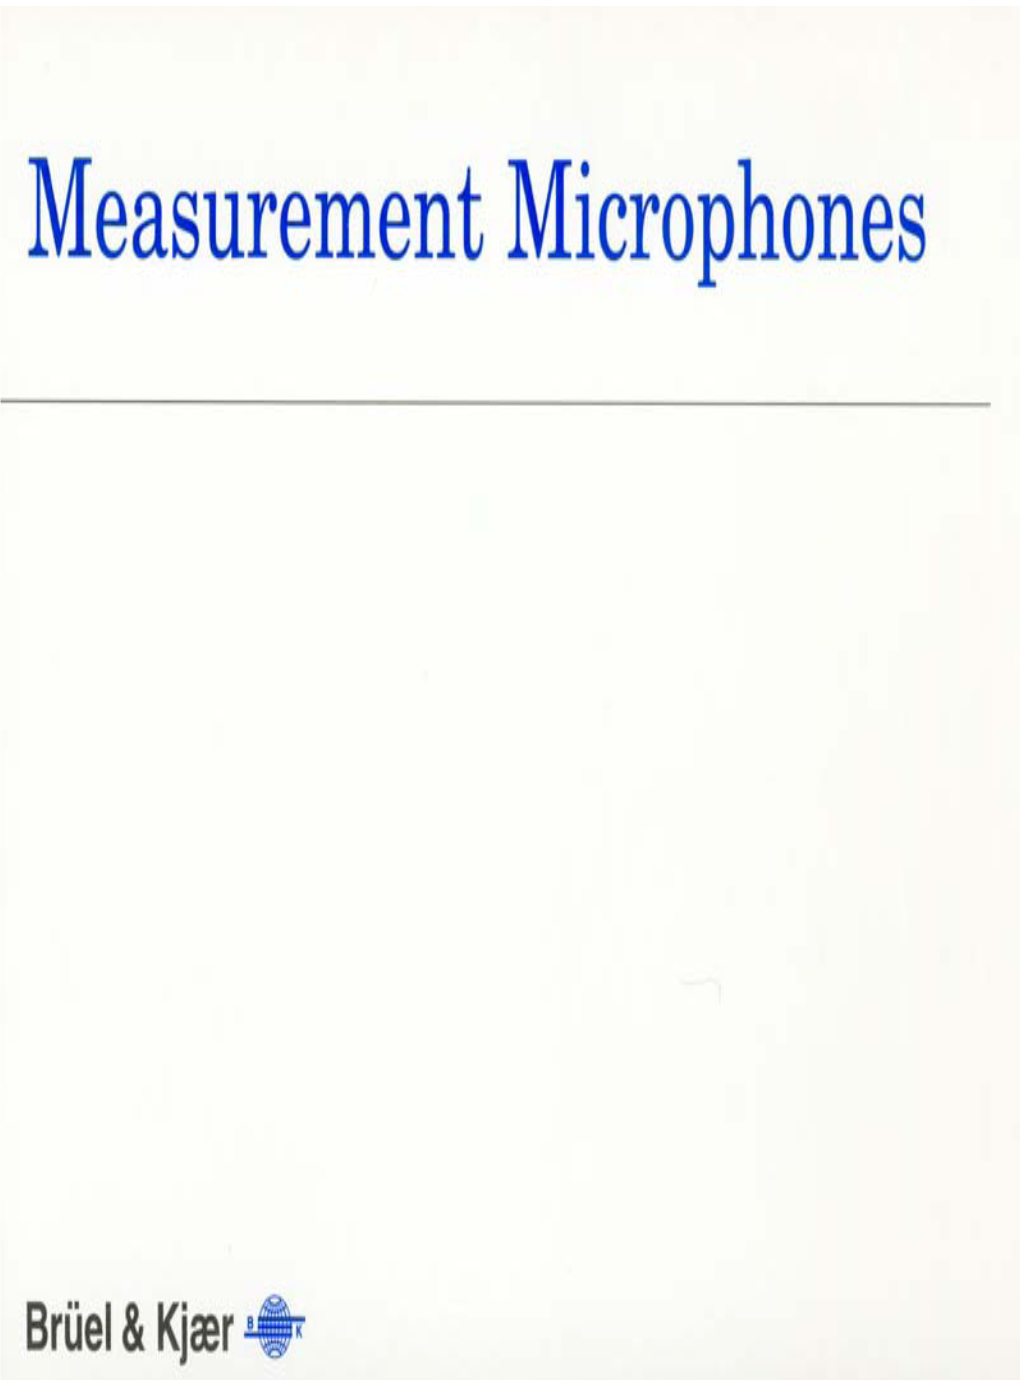 Measurement Microphones (BR0567-12)